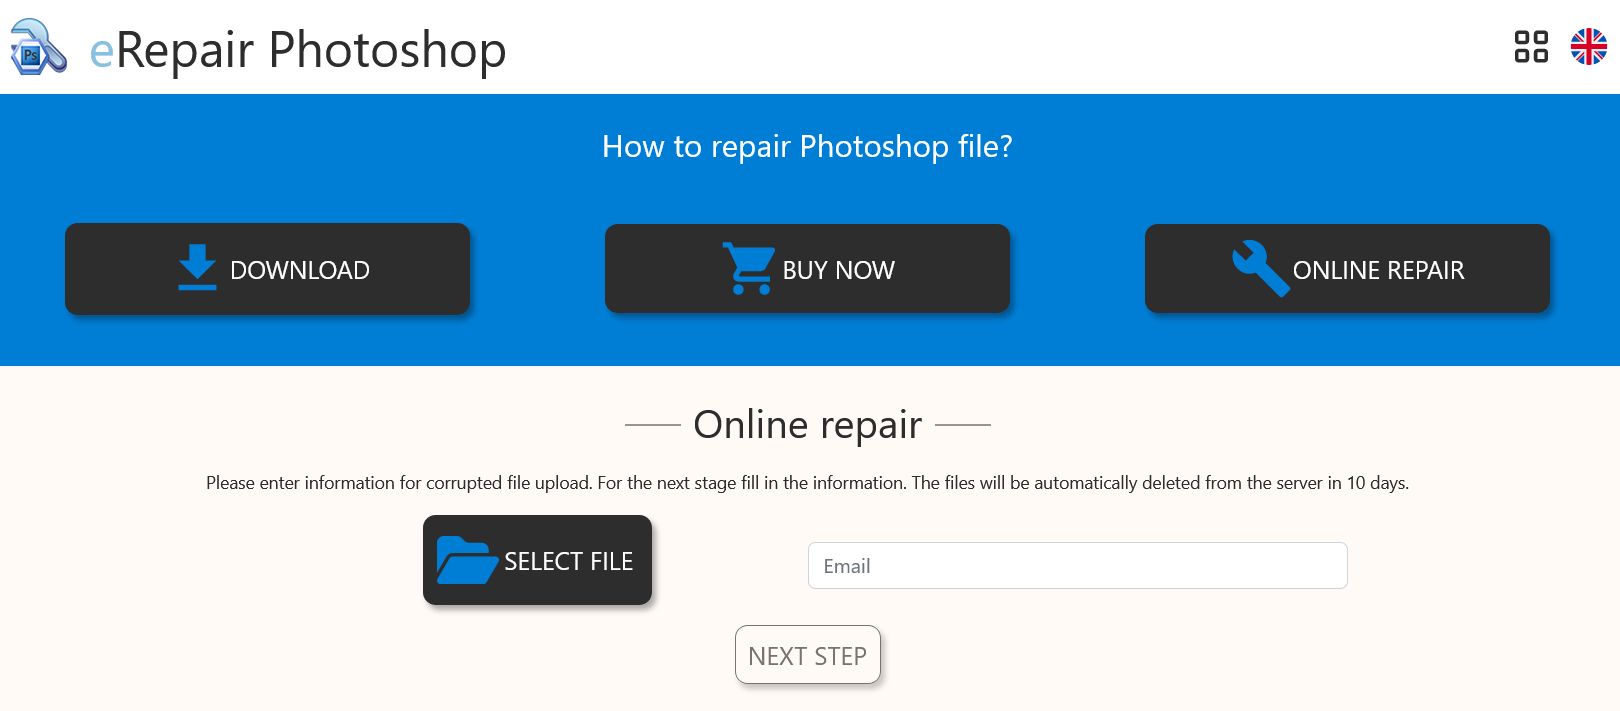 eRepair Photoshop - Online